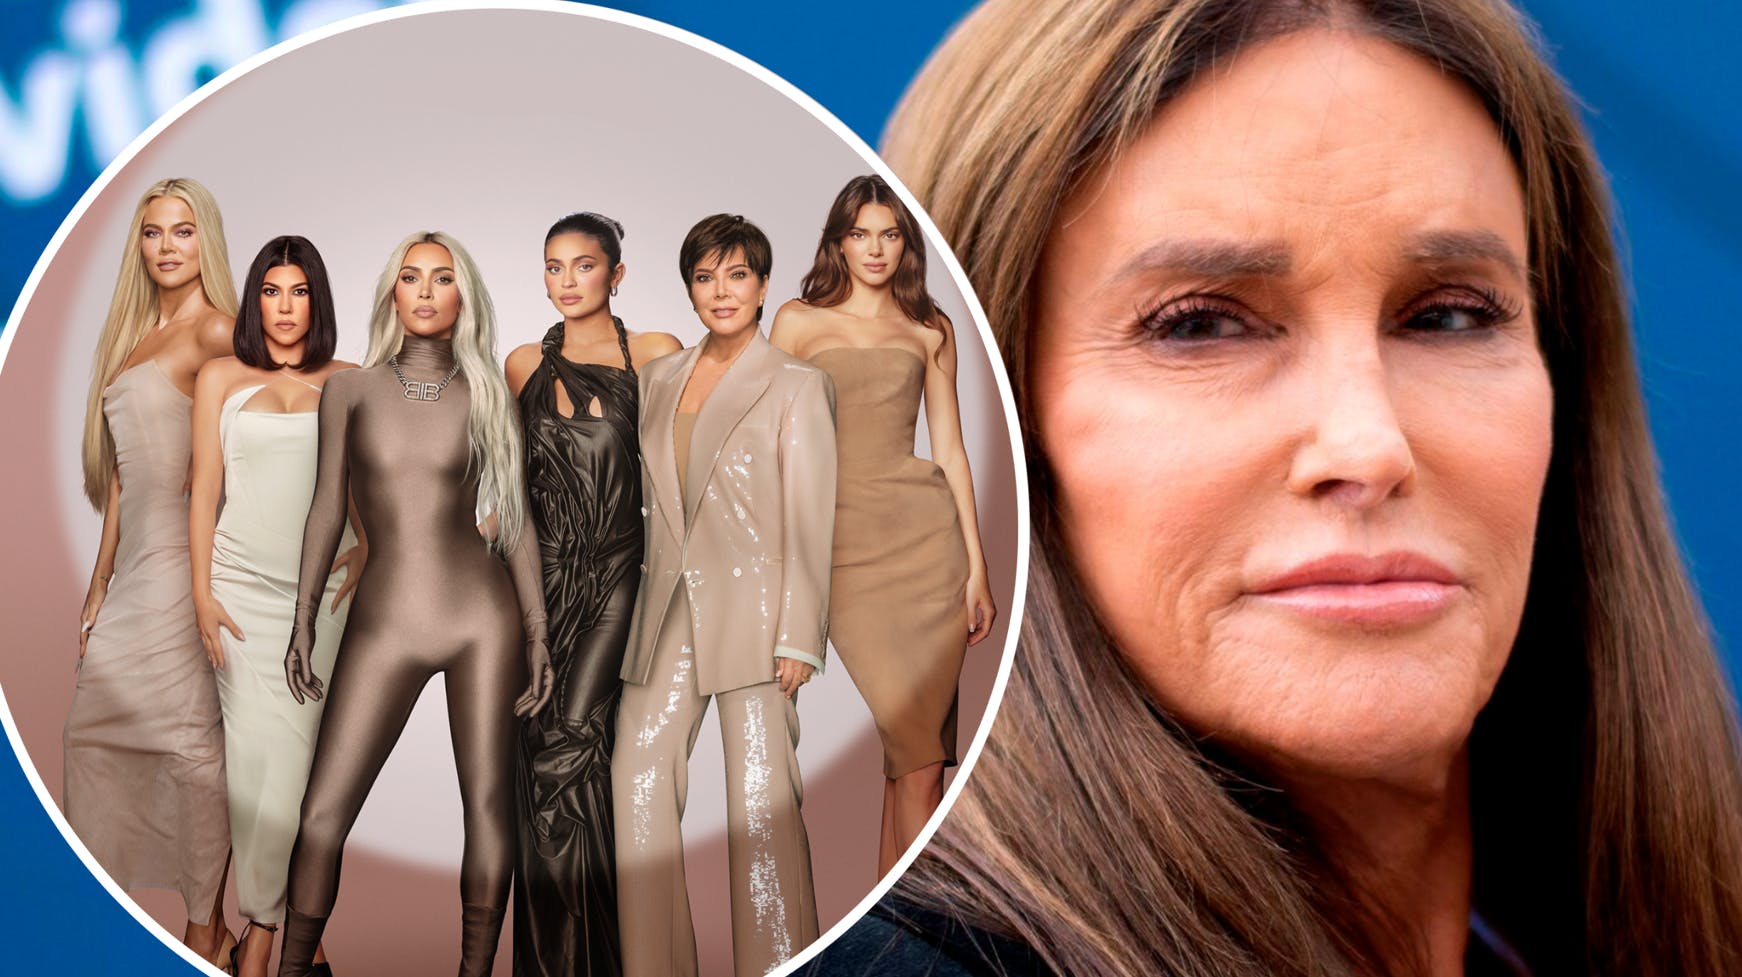 Caitlyn Jenner medvirker ikke længere i Kardashian-klanens realityshow, og det er hun sur over.